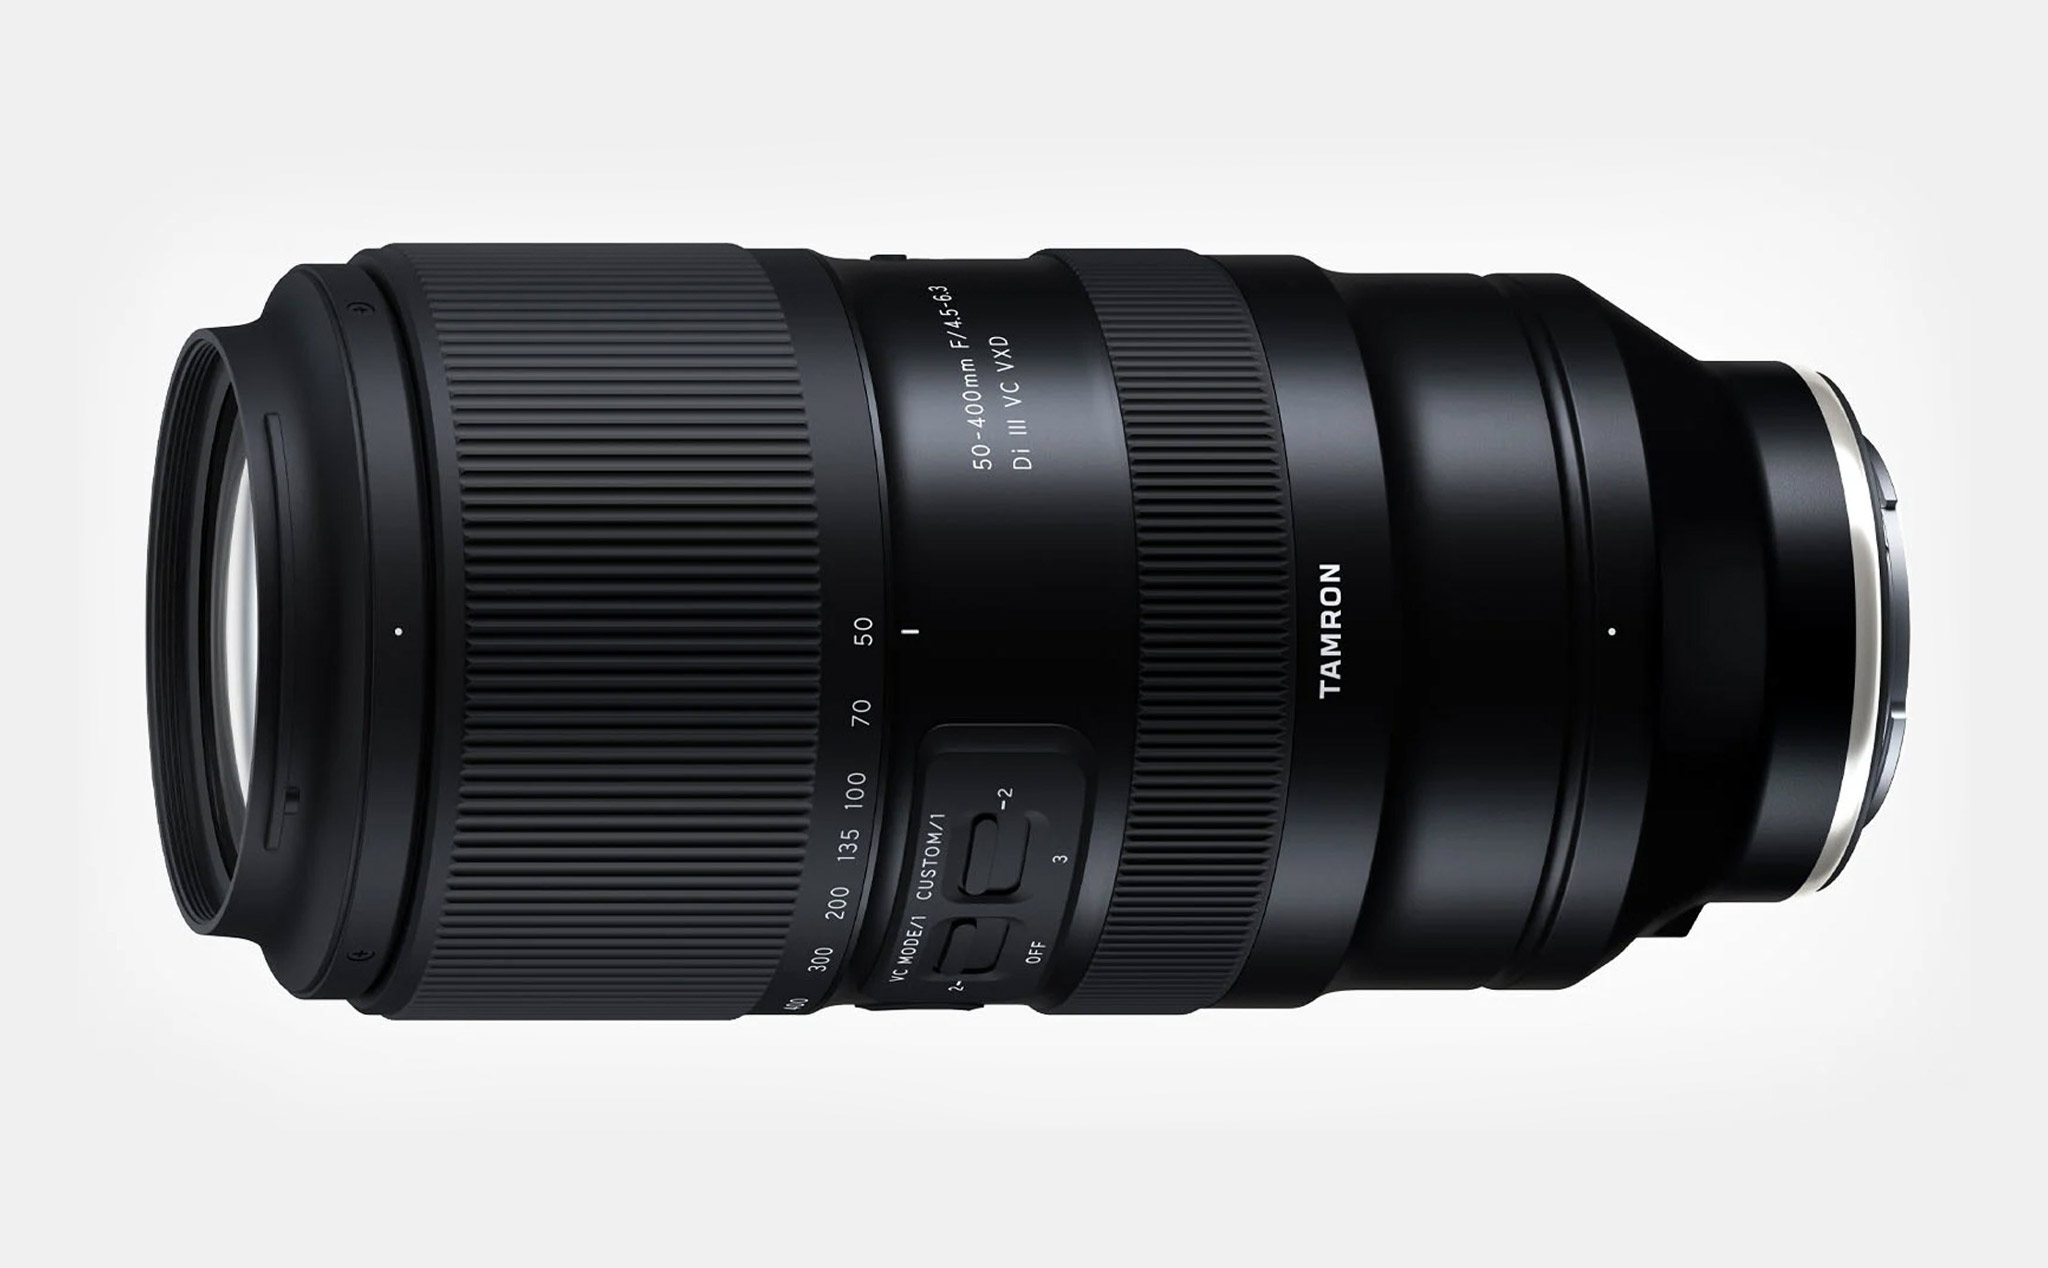 Tamron ra mắt 50-400mm f4.5-6.3 dành cho máy ảnh fullframe ngàm Sony E